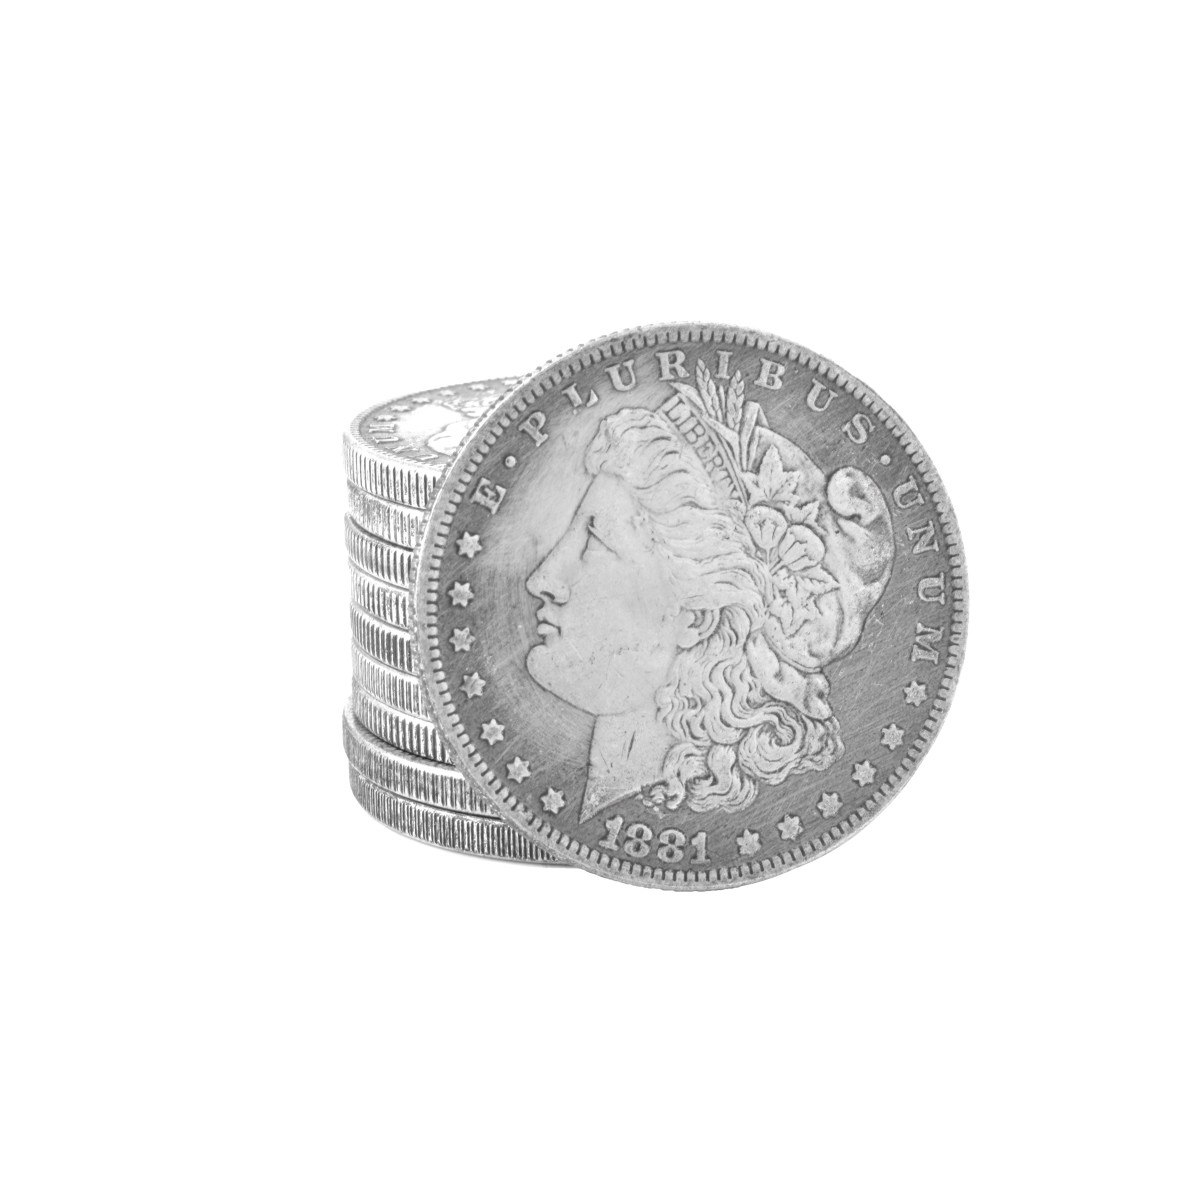 Ten US Morgan Silver Dollar Coins